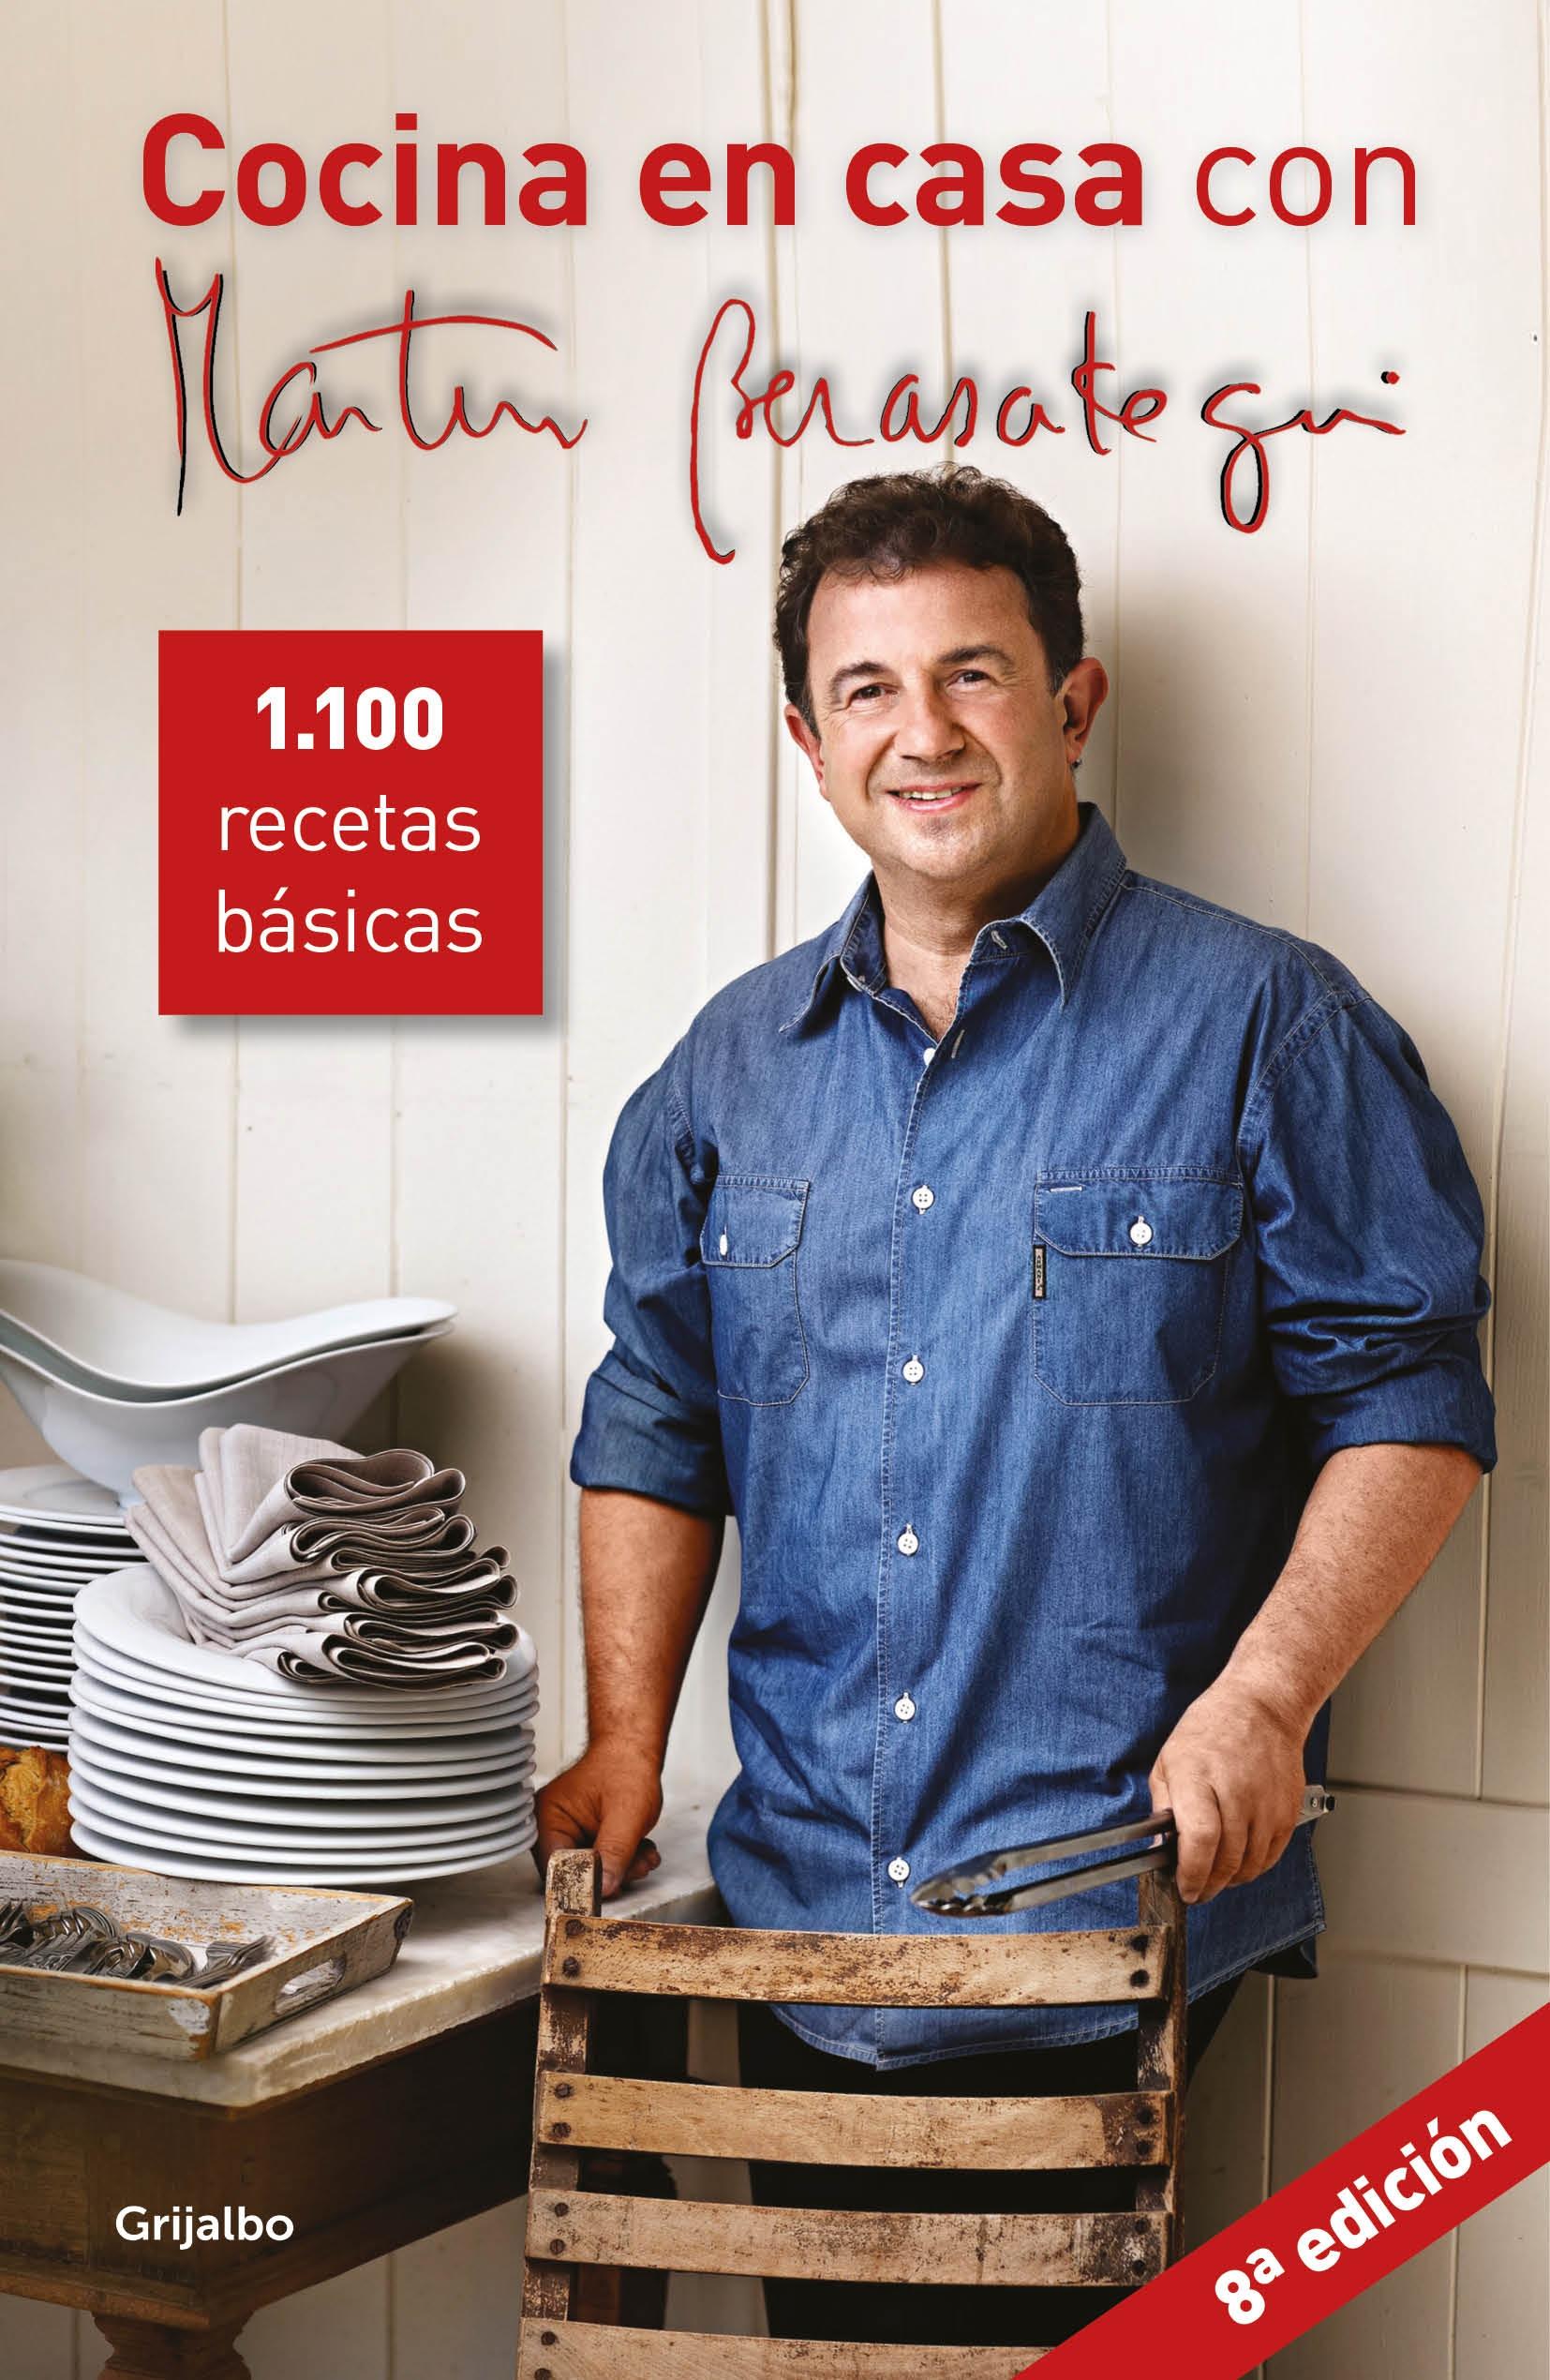 Cocina en casa con Martín Berasategui "1100 recetas básicas"